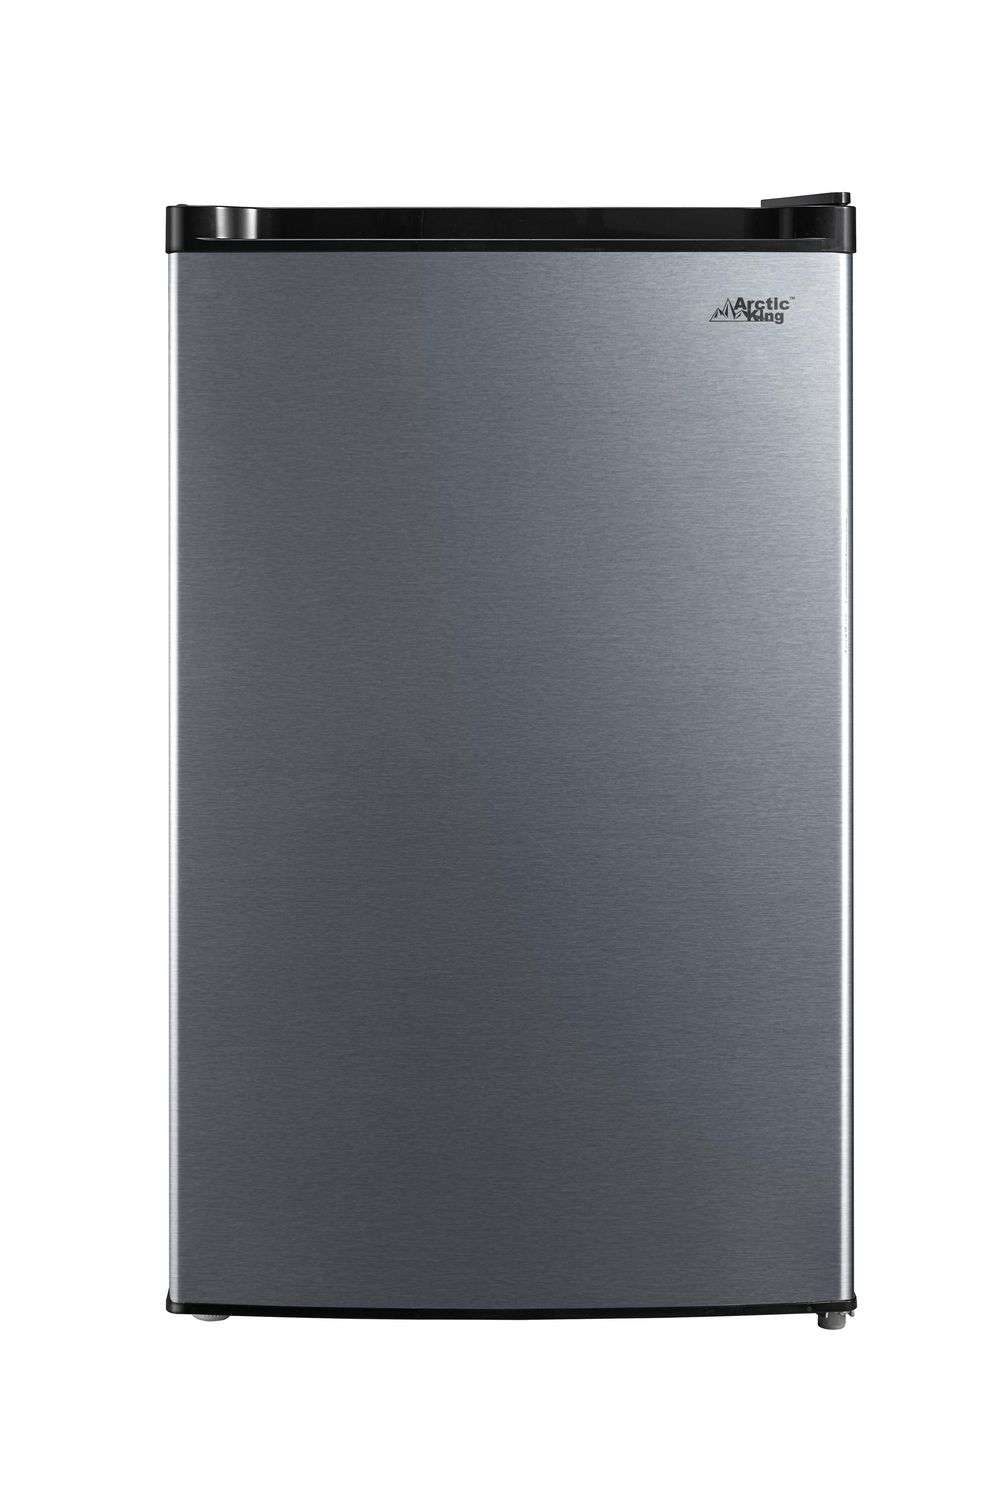 Réfrigérateur compact à une porte Arctic King de 4,4 pi3, E-Star